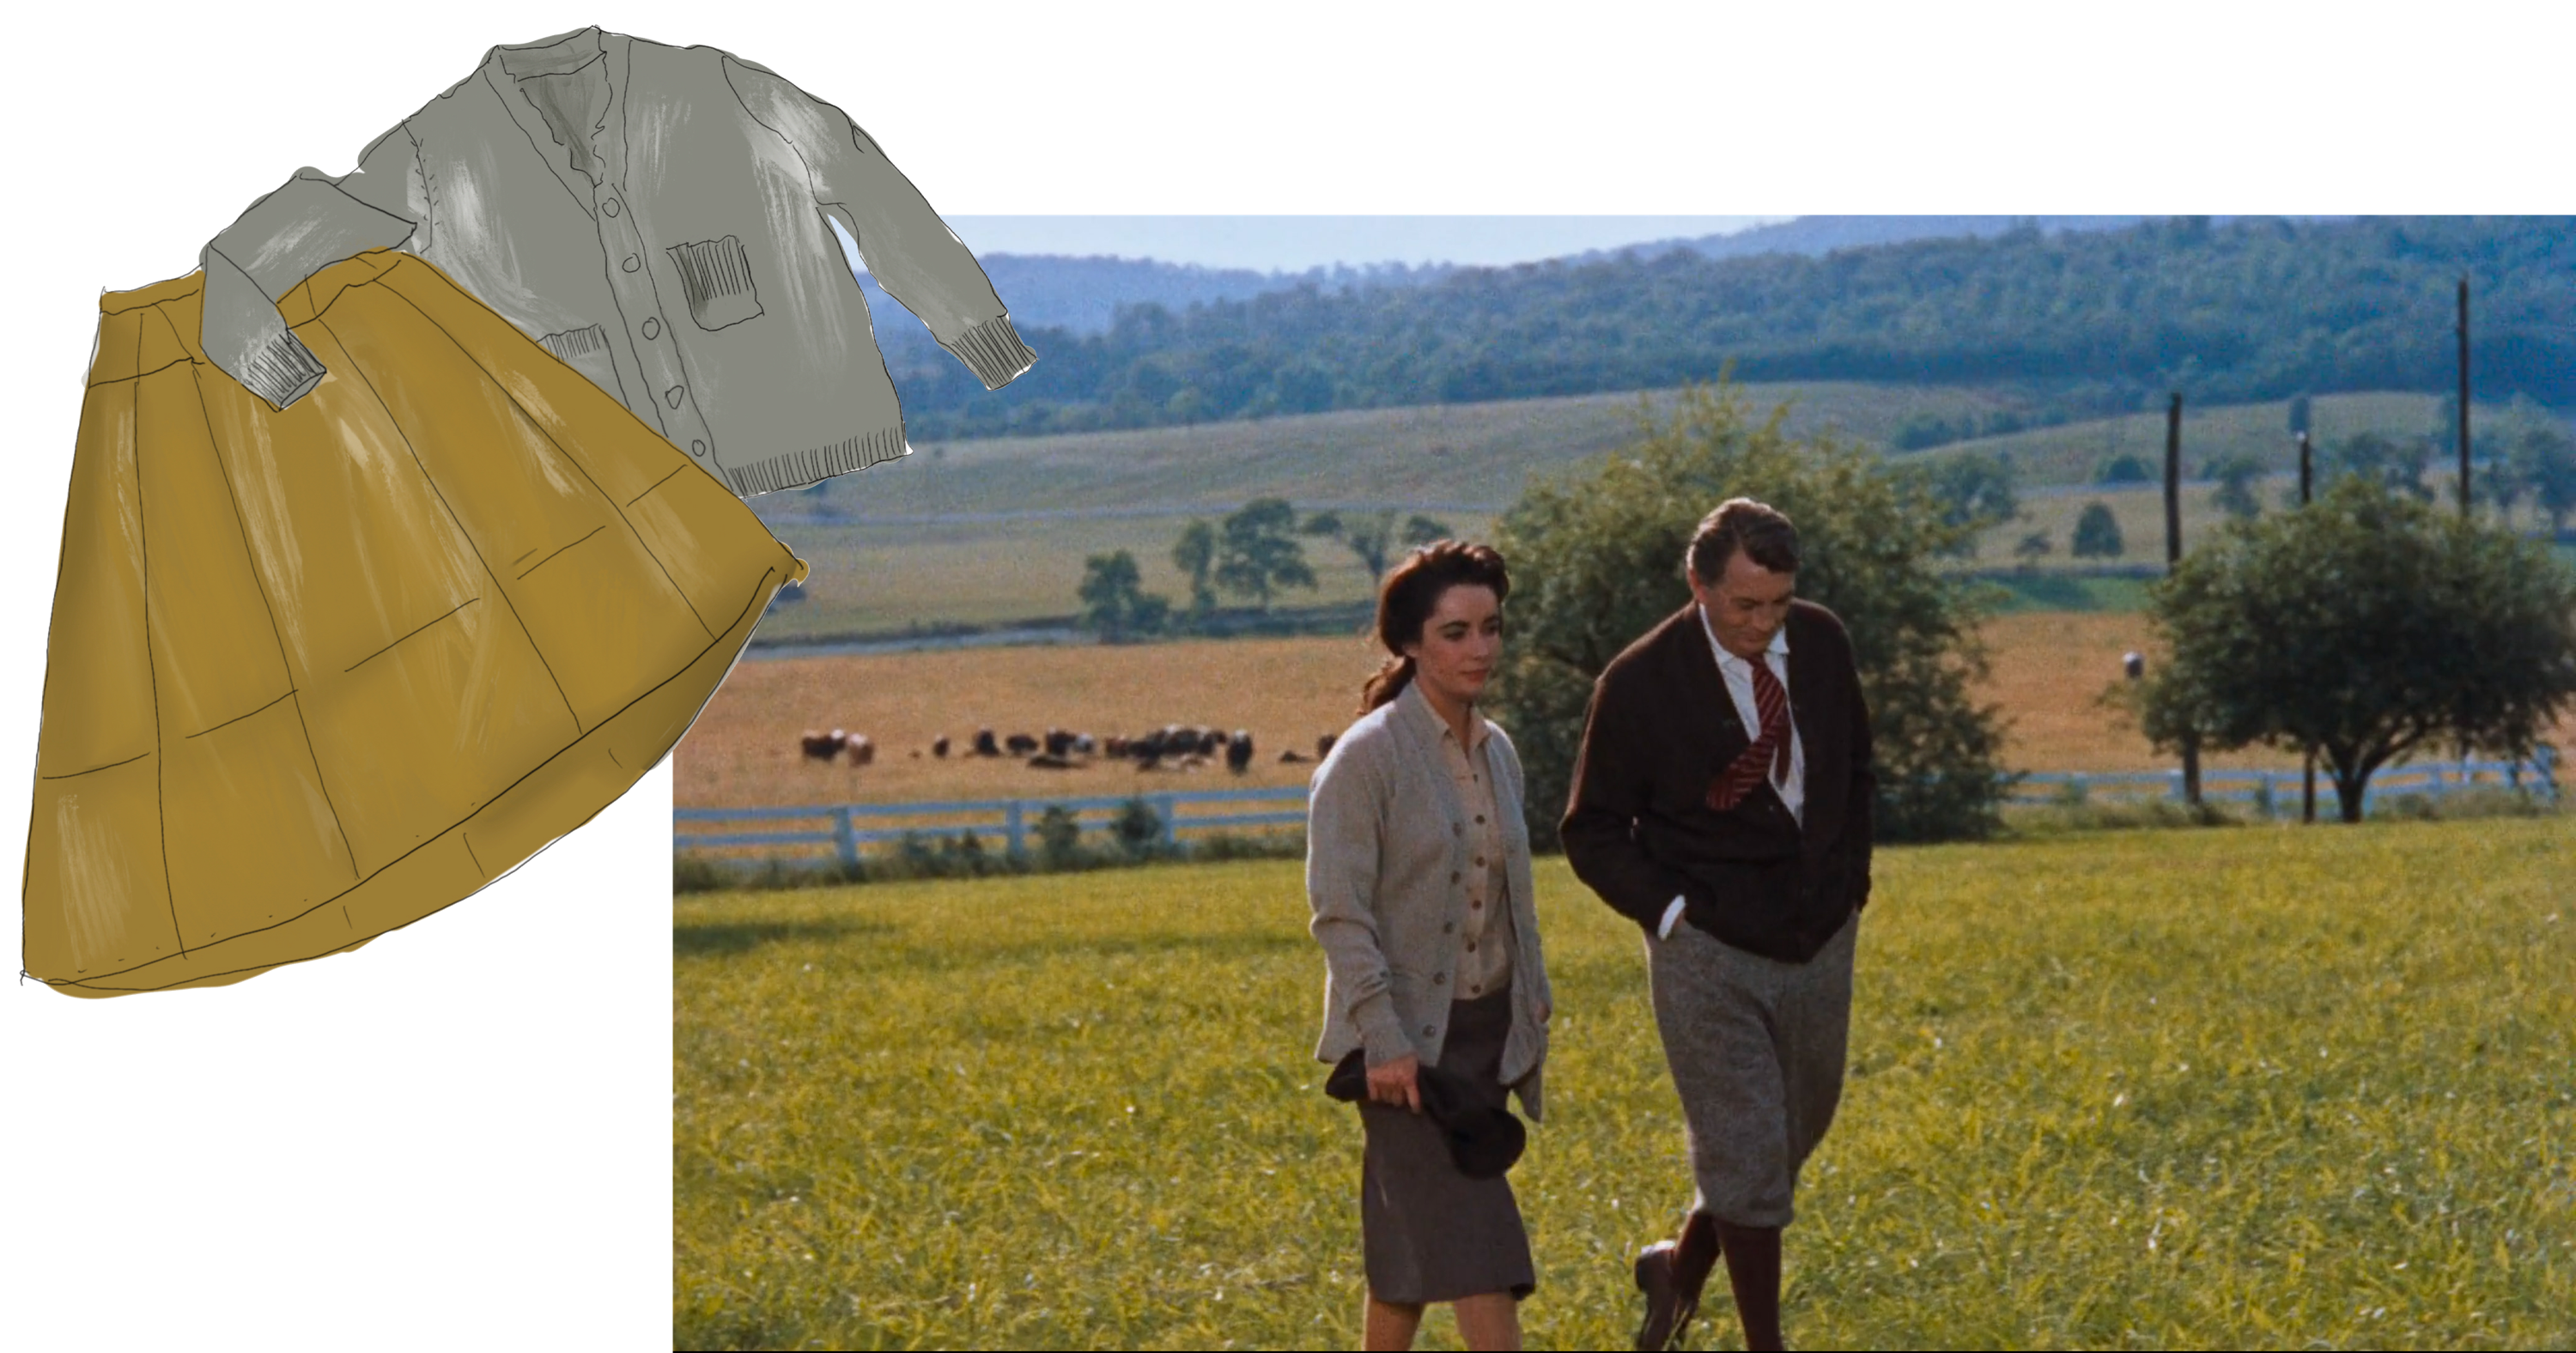 two people walking in a field